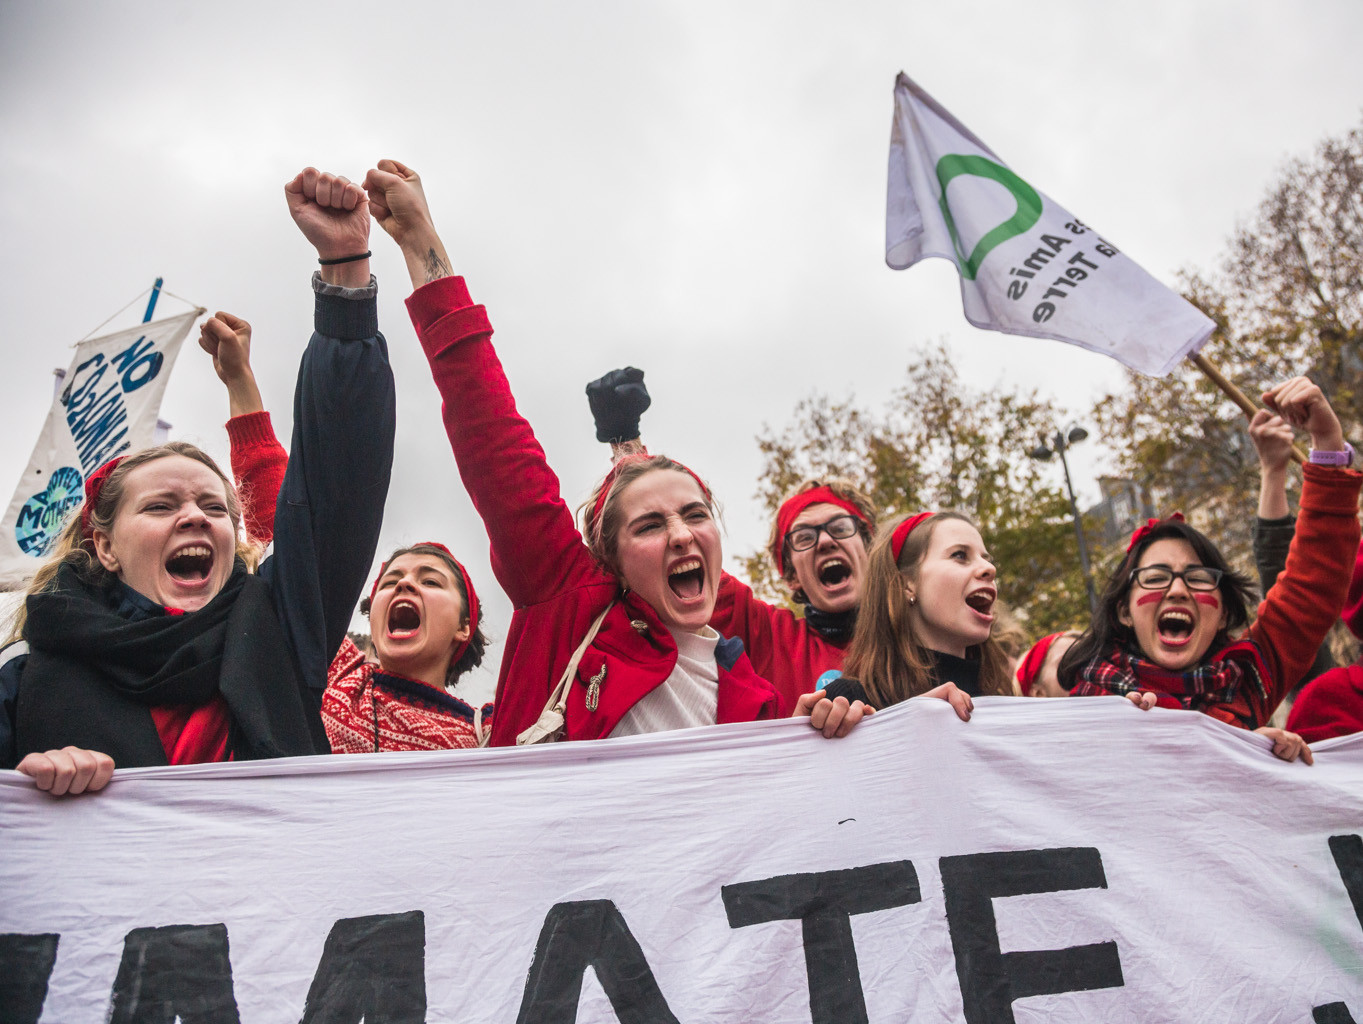 Kliimamuutusi esilekutsuva tööstustegevuse vastu protestivad noored Pariisis 2015. aastal. Foto: Renee Altrov